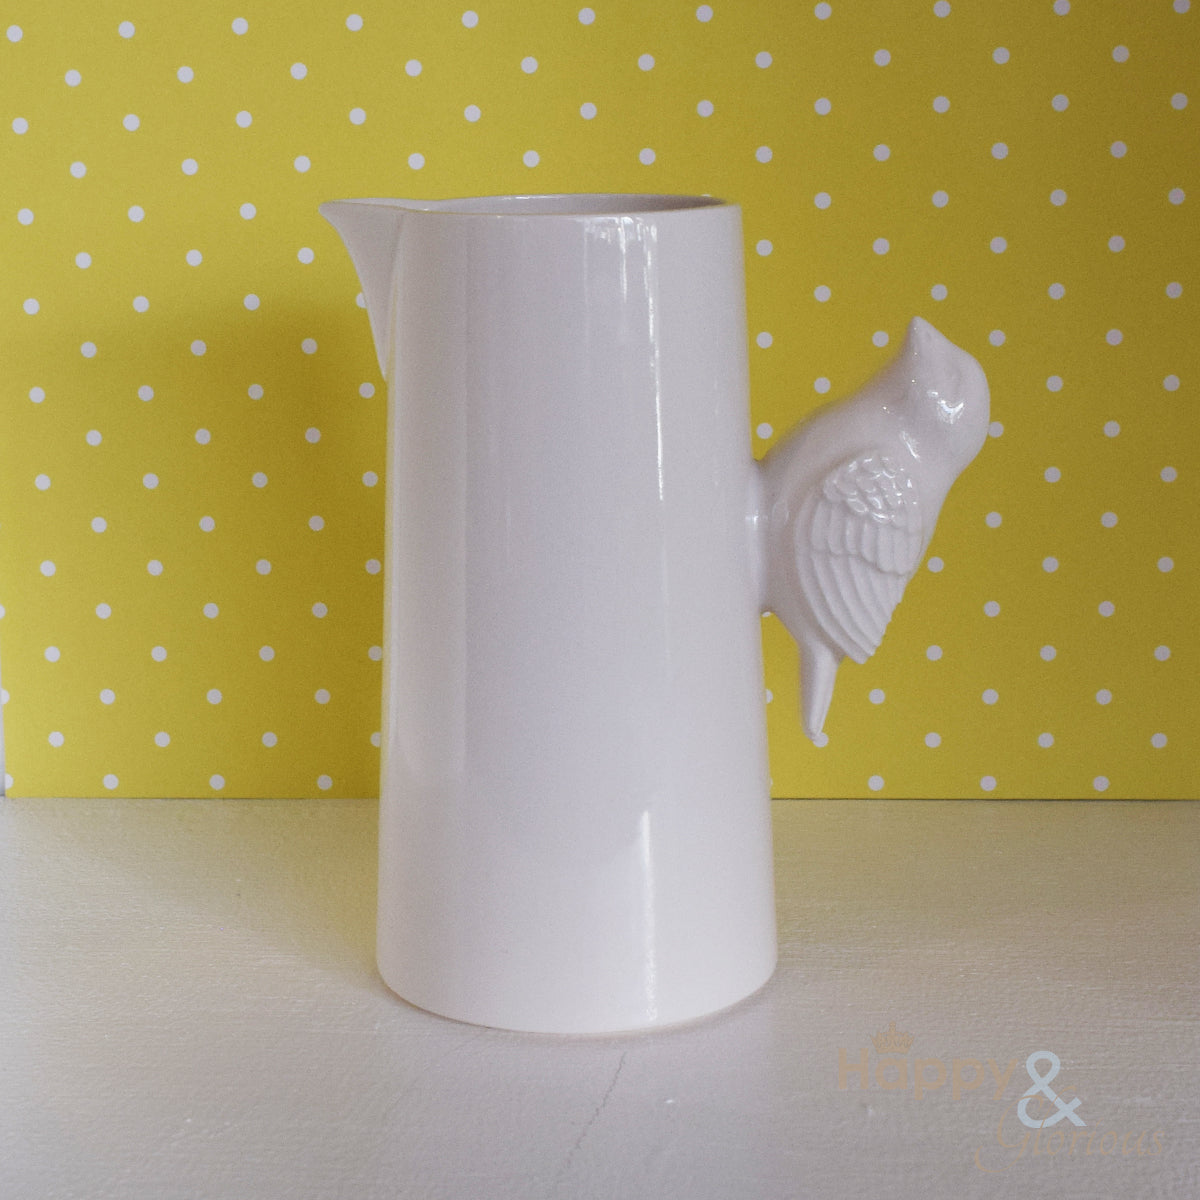 Ceramic bird milk jug by Katie Brinsley